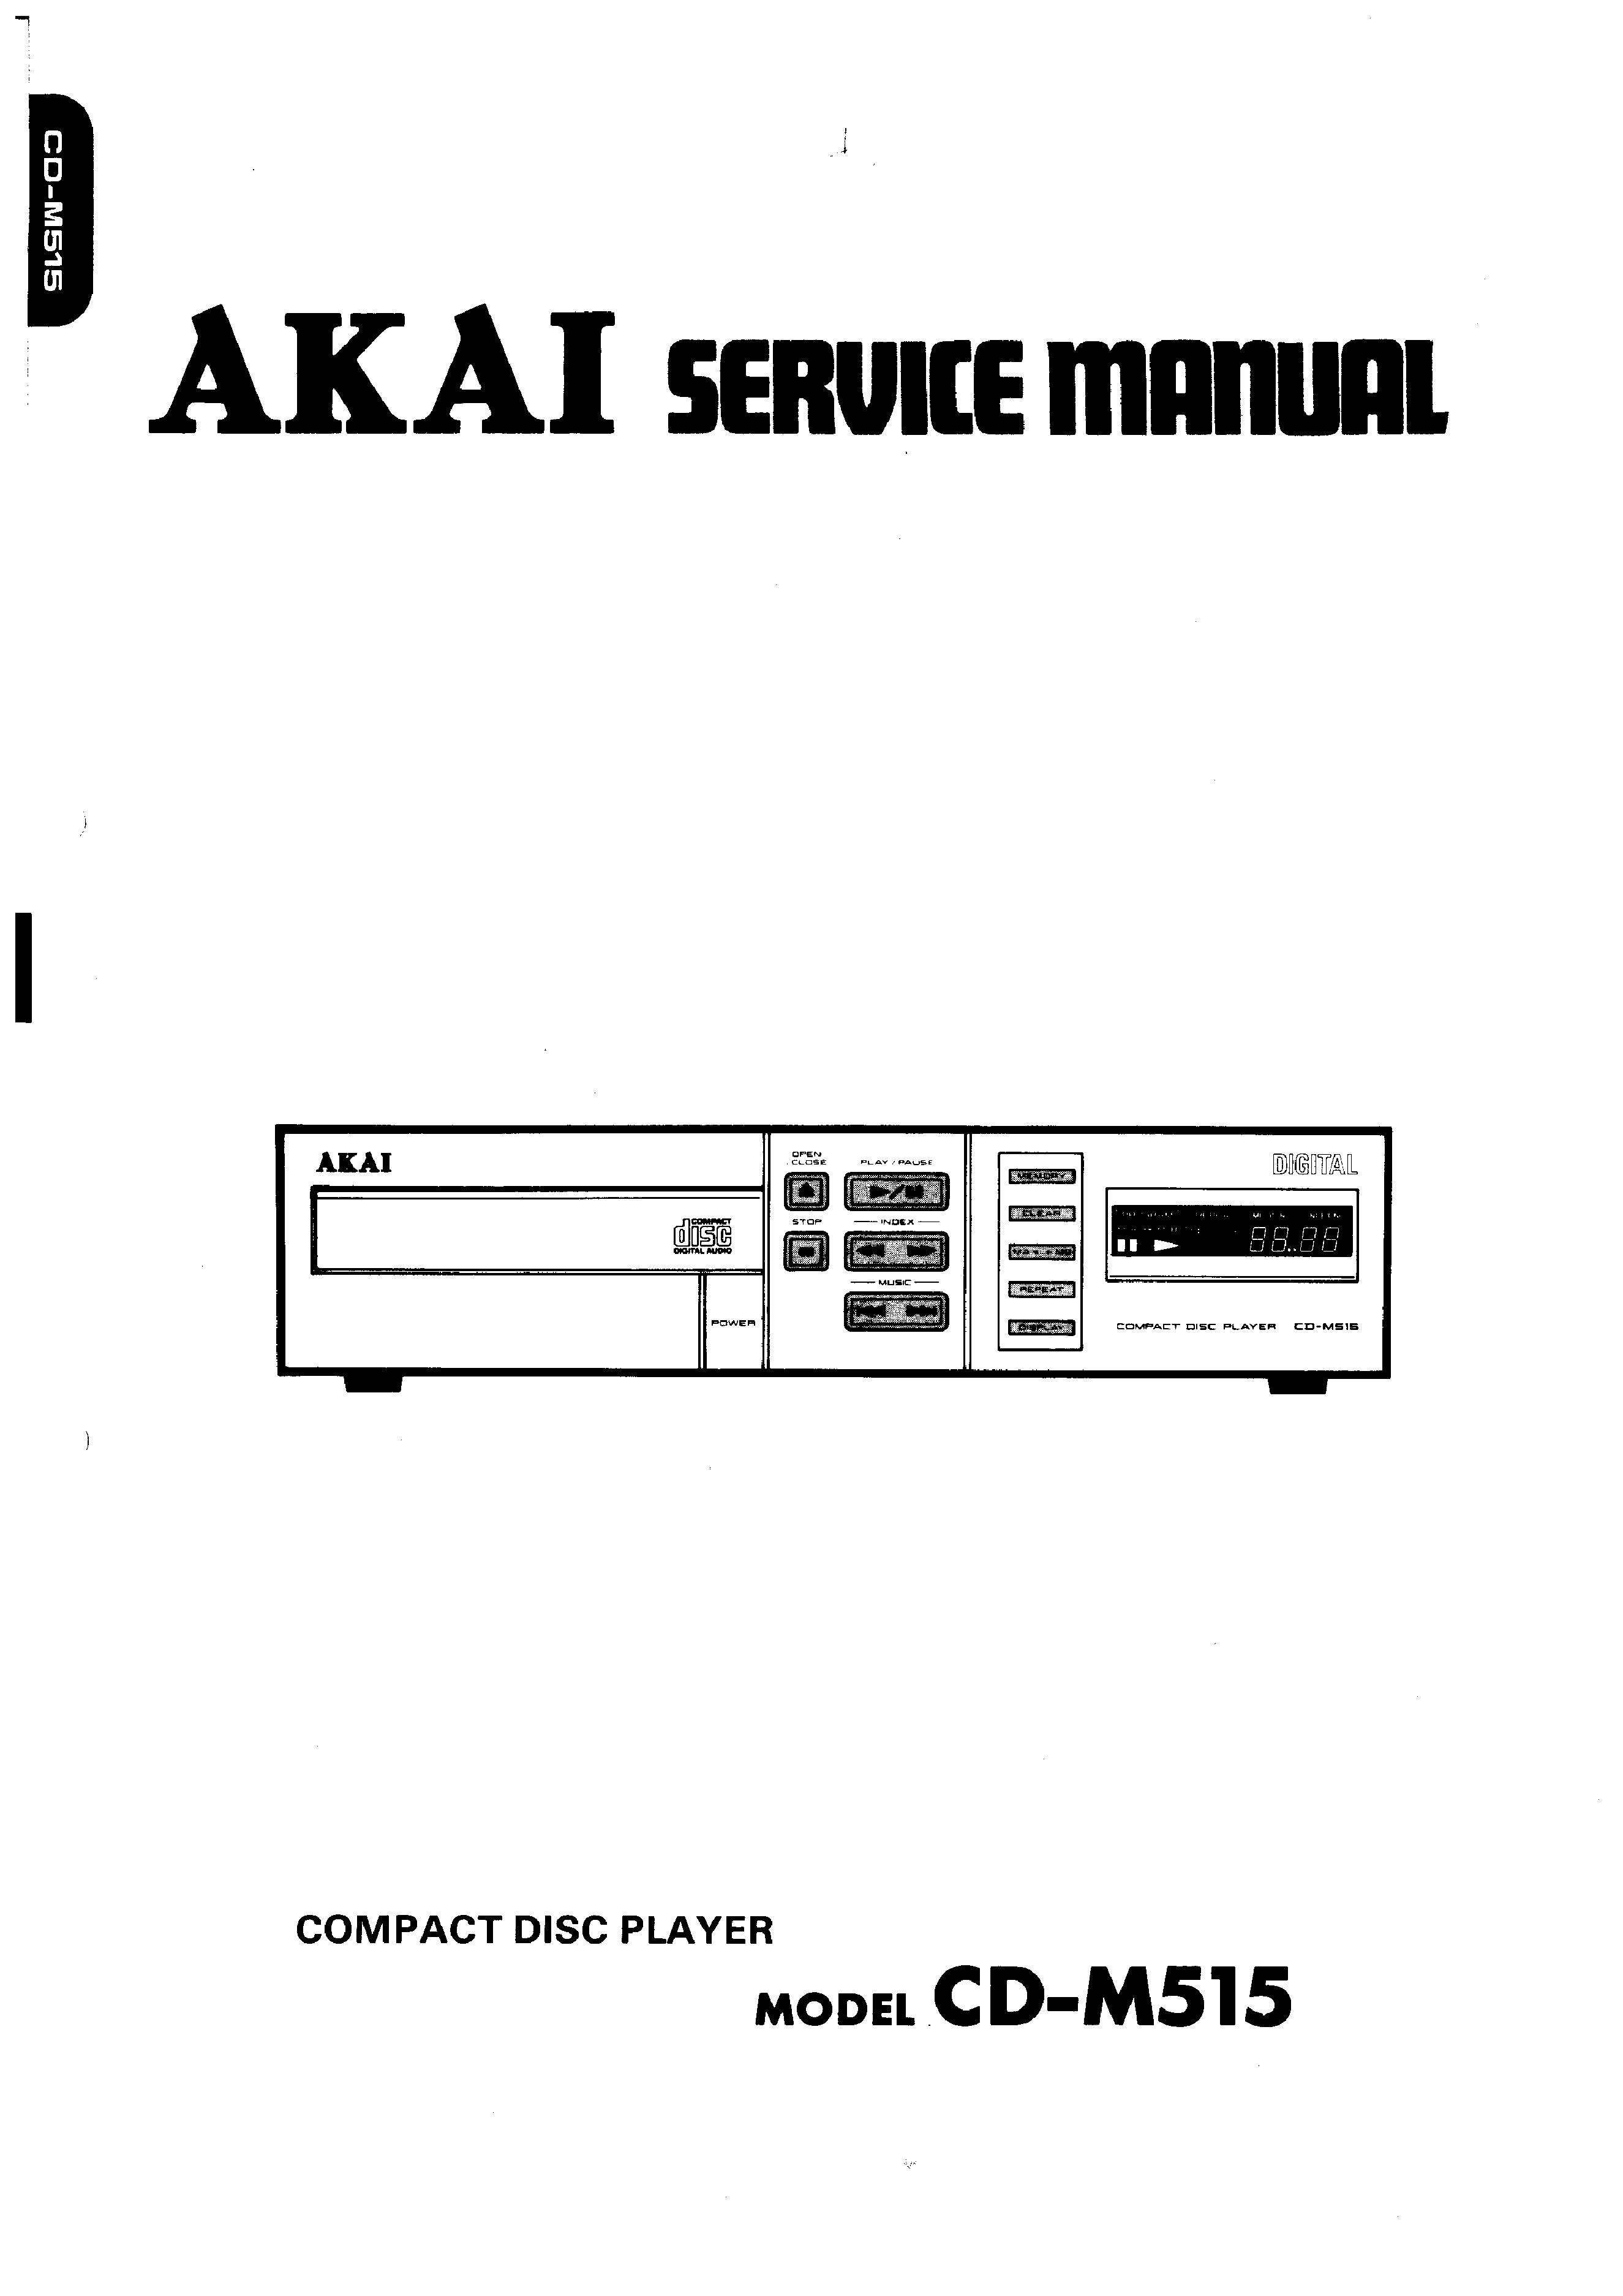 Akai CD-M515